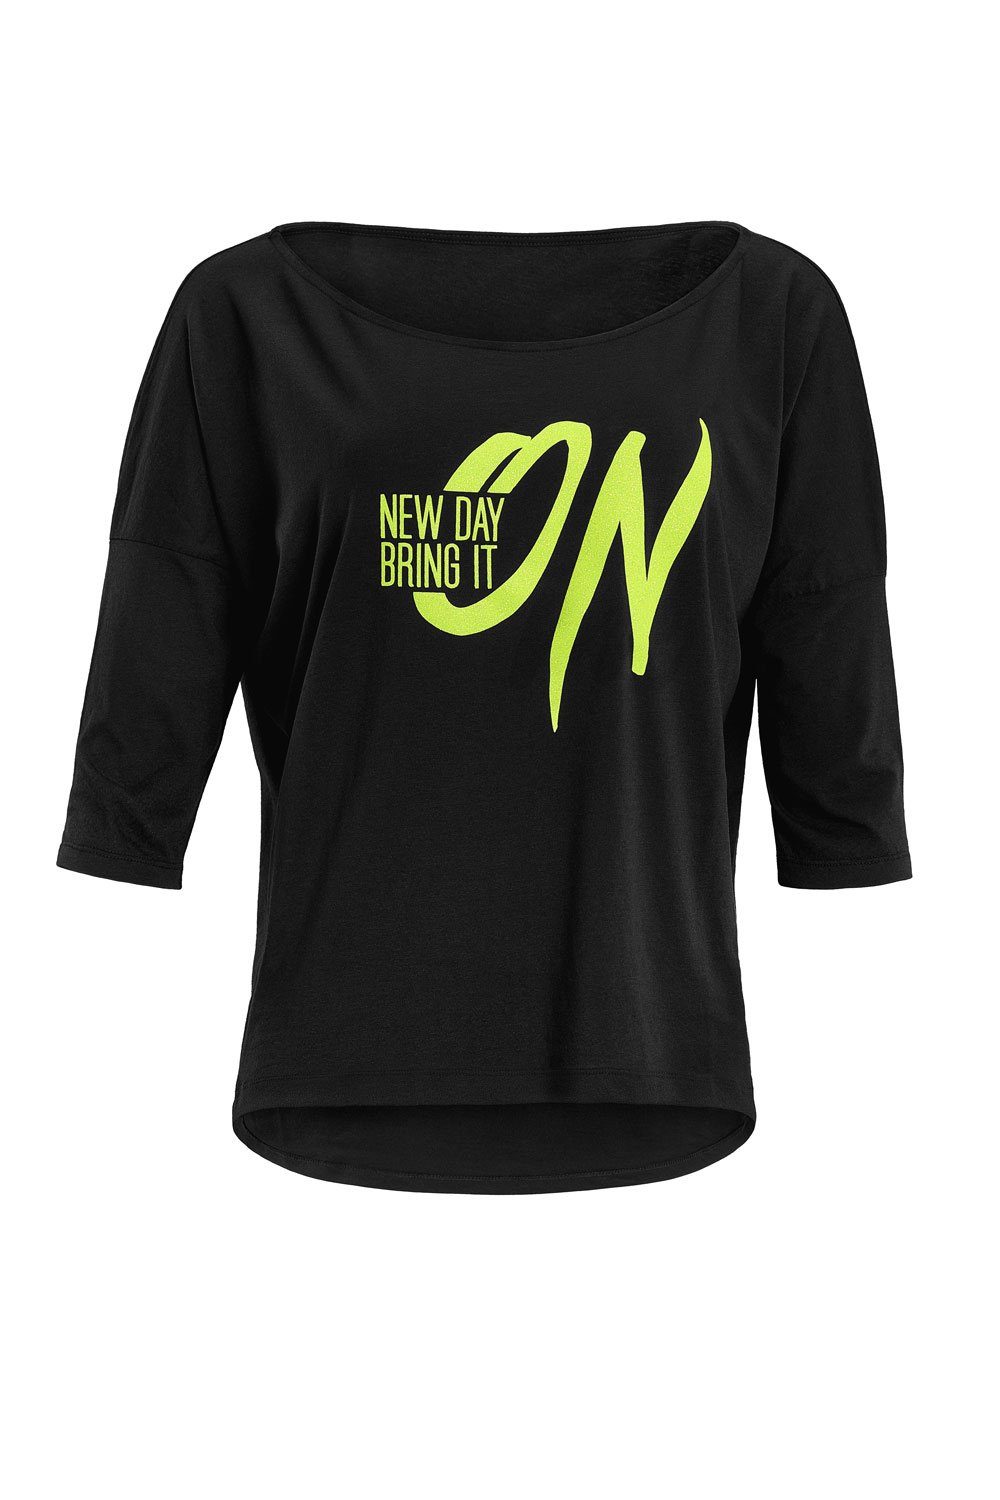 Winshape 3/4-Arm-Shirt MCS001 ultra leicht mit Neon gelbem Glitzer-Aufdruck | Shirts